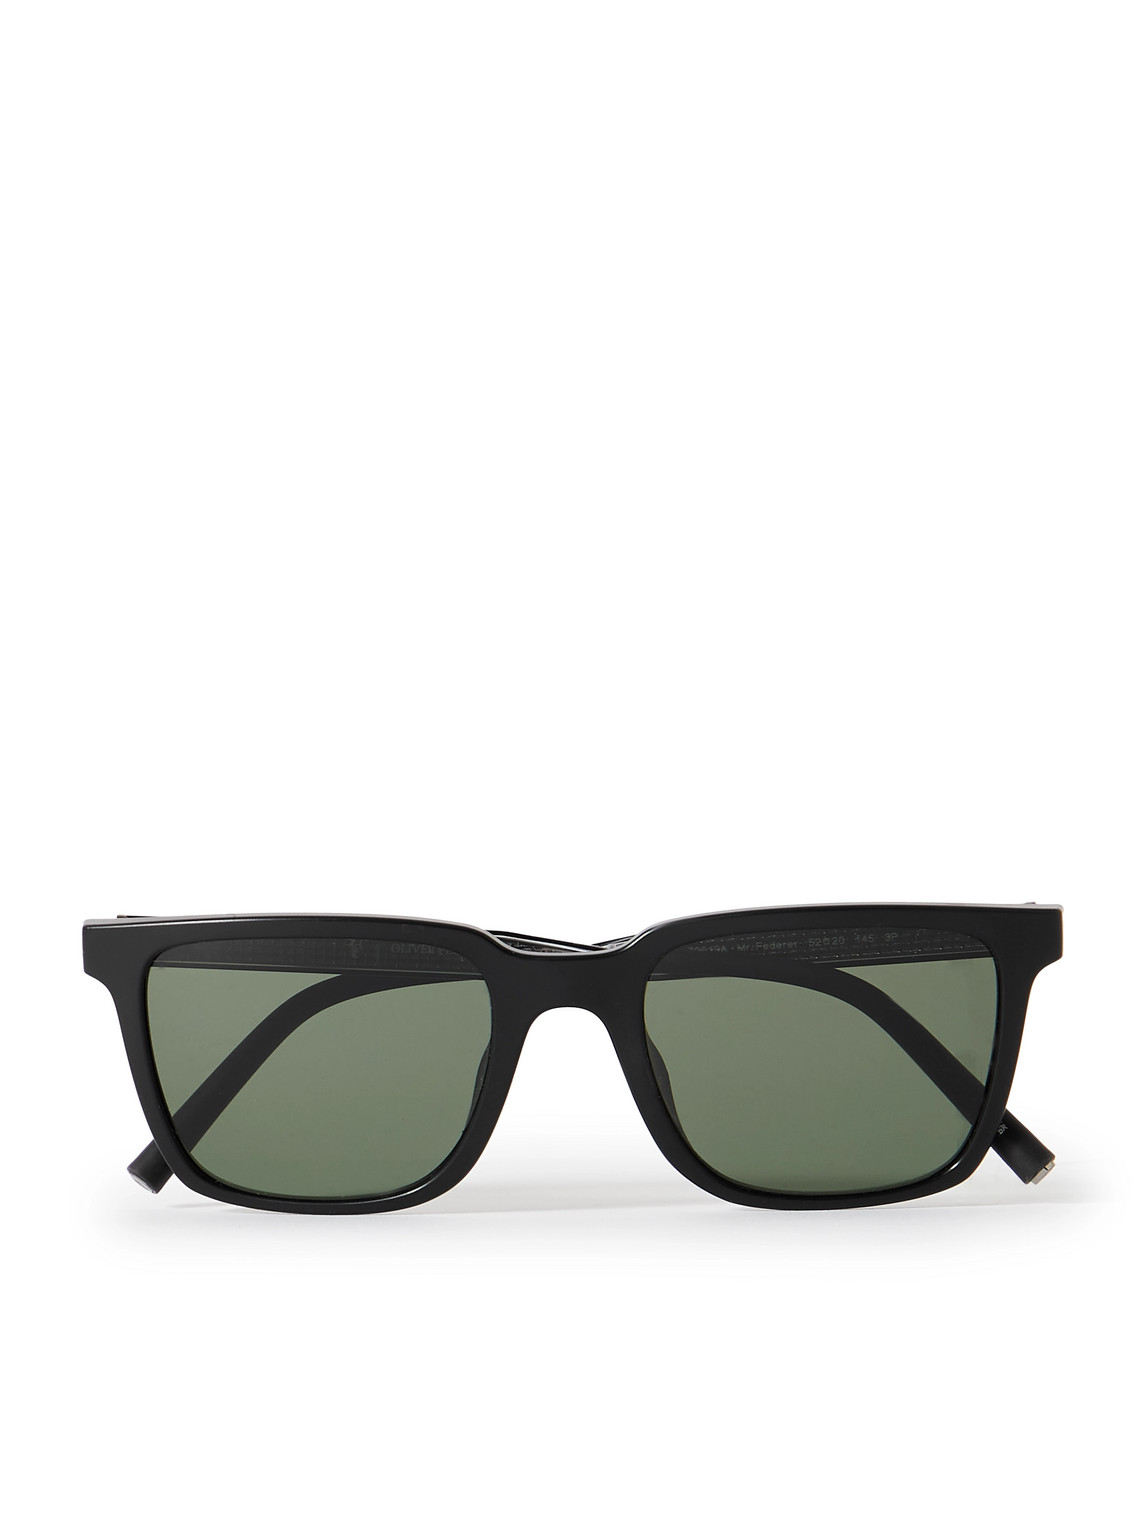 Oliver Peoples Roger Federer Square-frame Acetate Sunglasses In Green